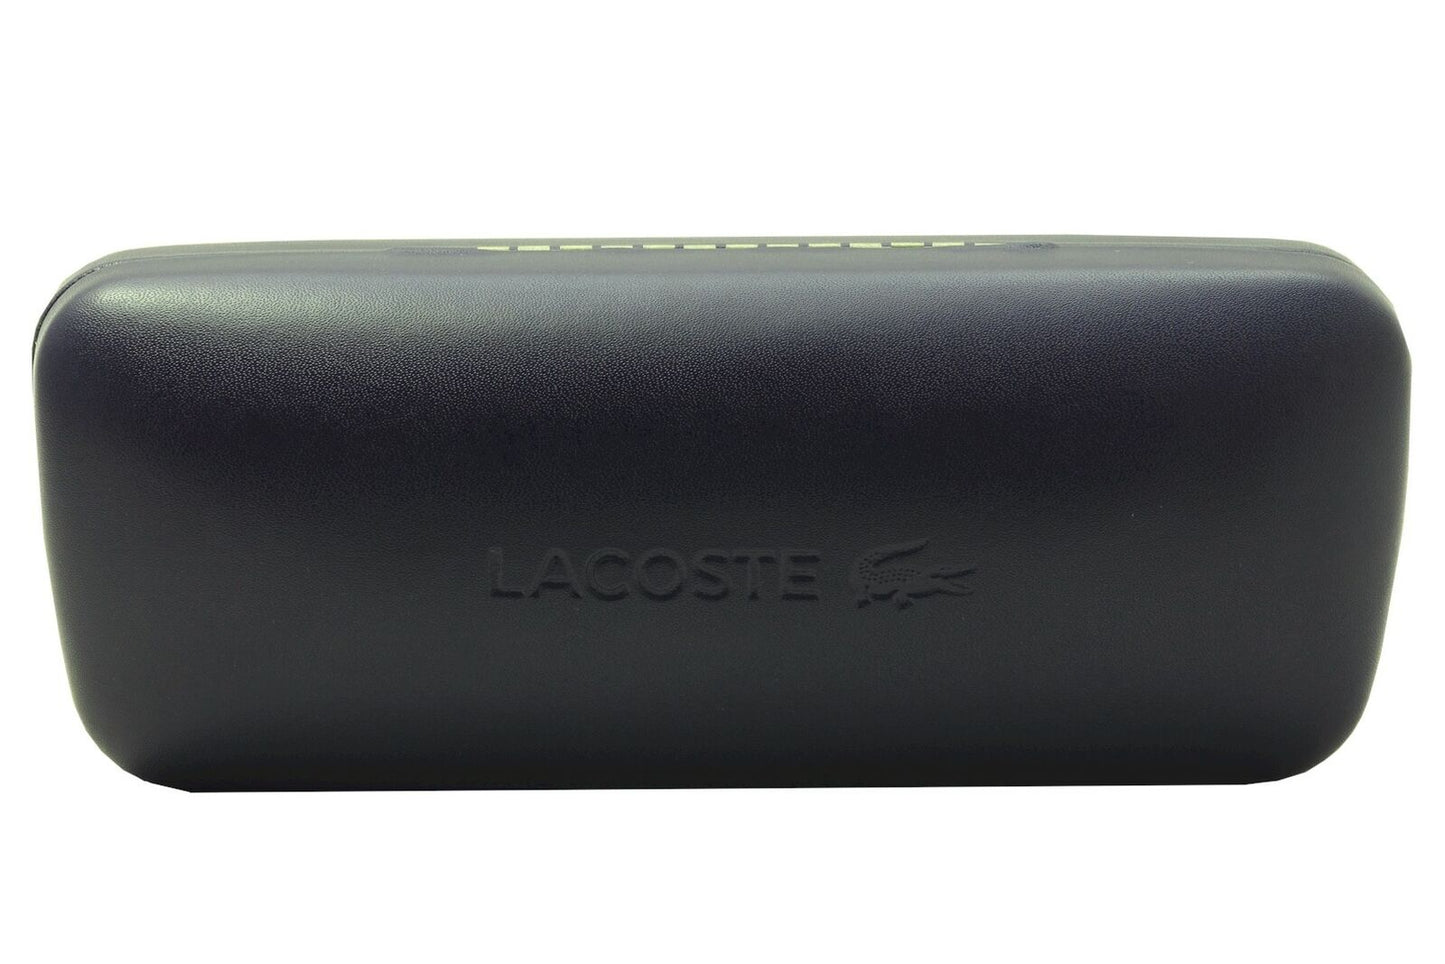 Lacoste L963S-009 59mm New Sunglasses